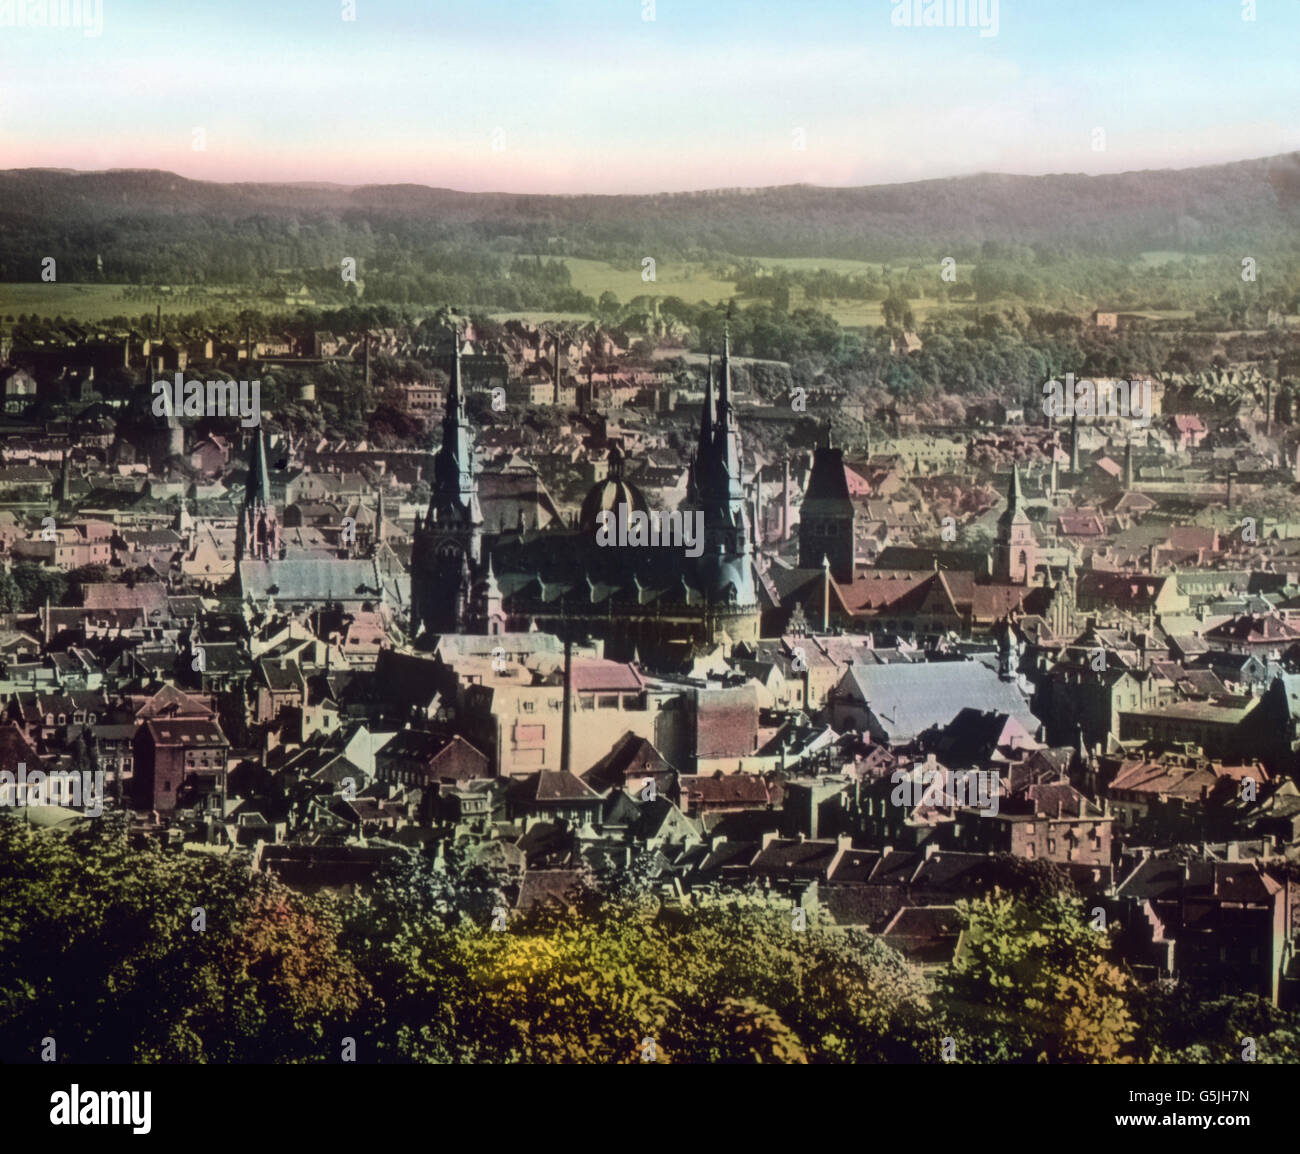 Blick auf die Stadt Aachen mit dem Dom im Zentrum, 1920er Jahre. Vista della città di Aquisgrana con la sua cattedrale nel centro della città, 1920s. Foto Stock